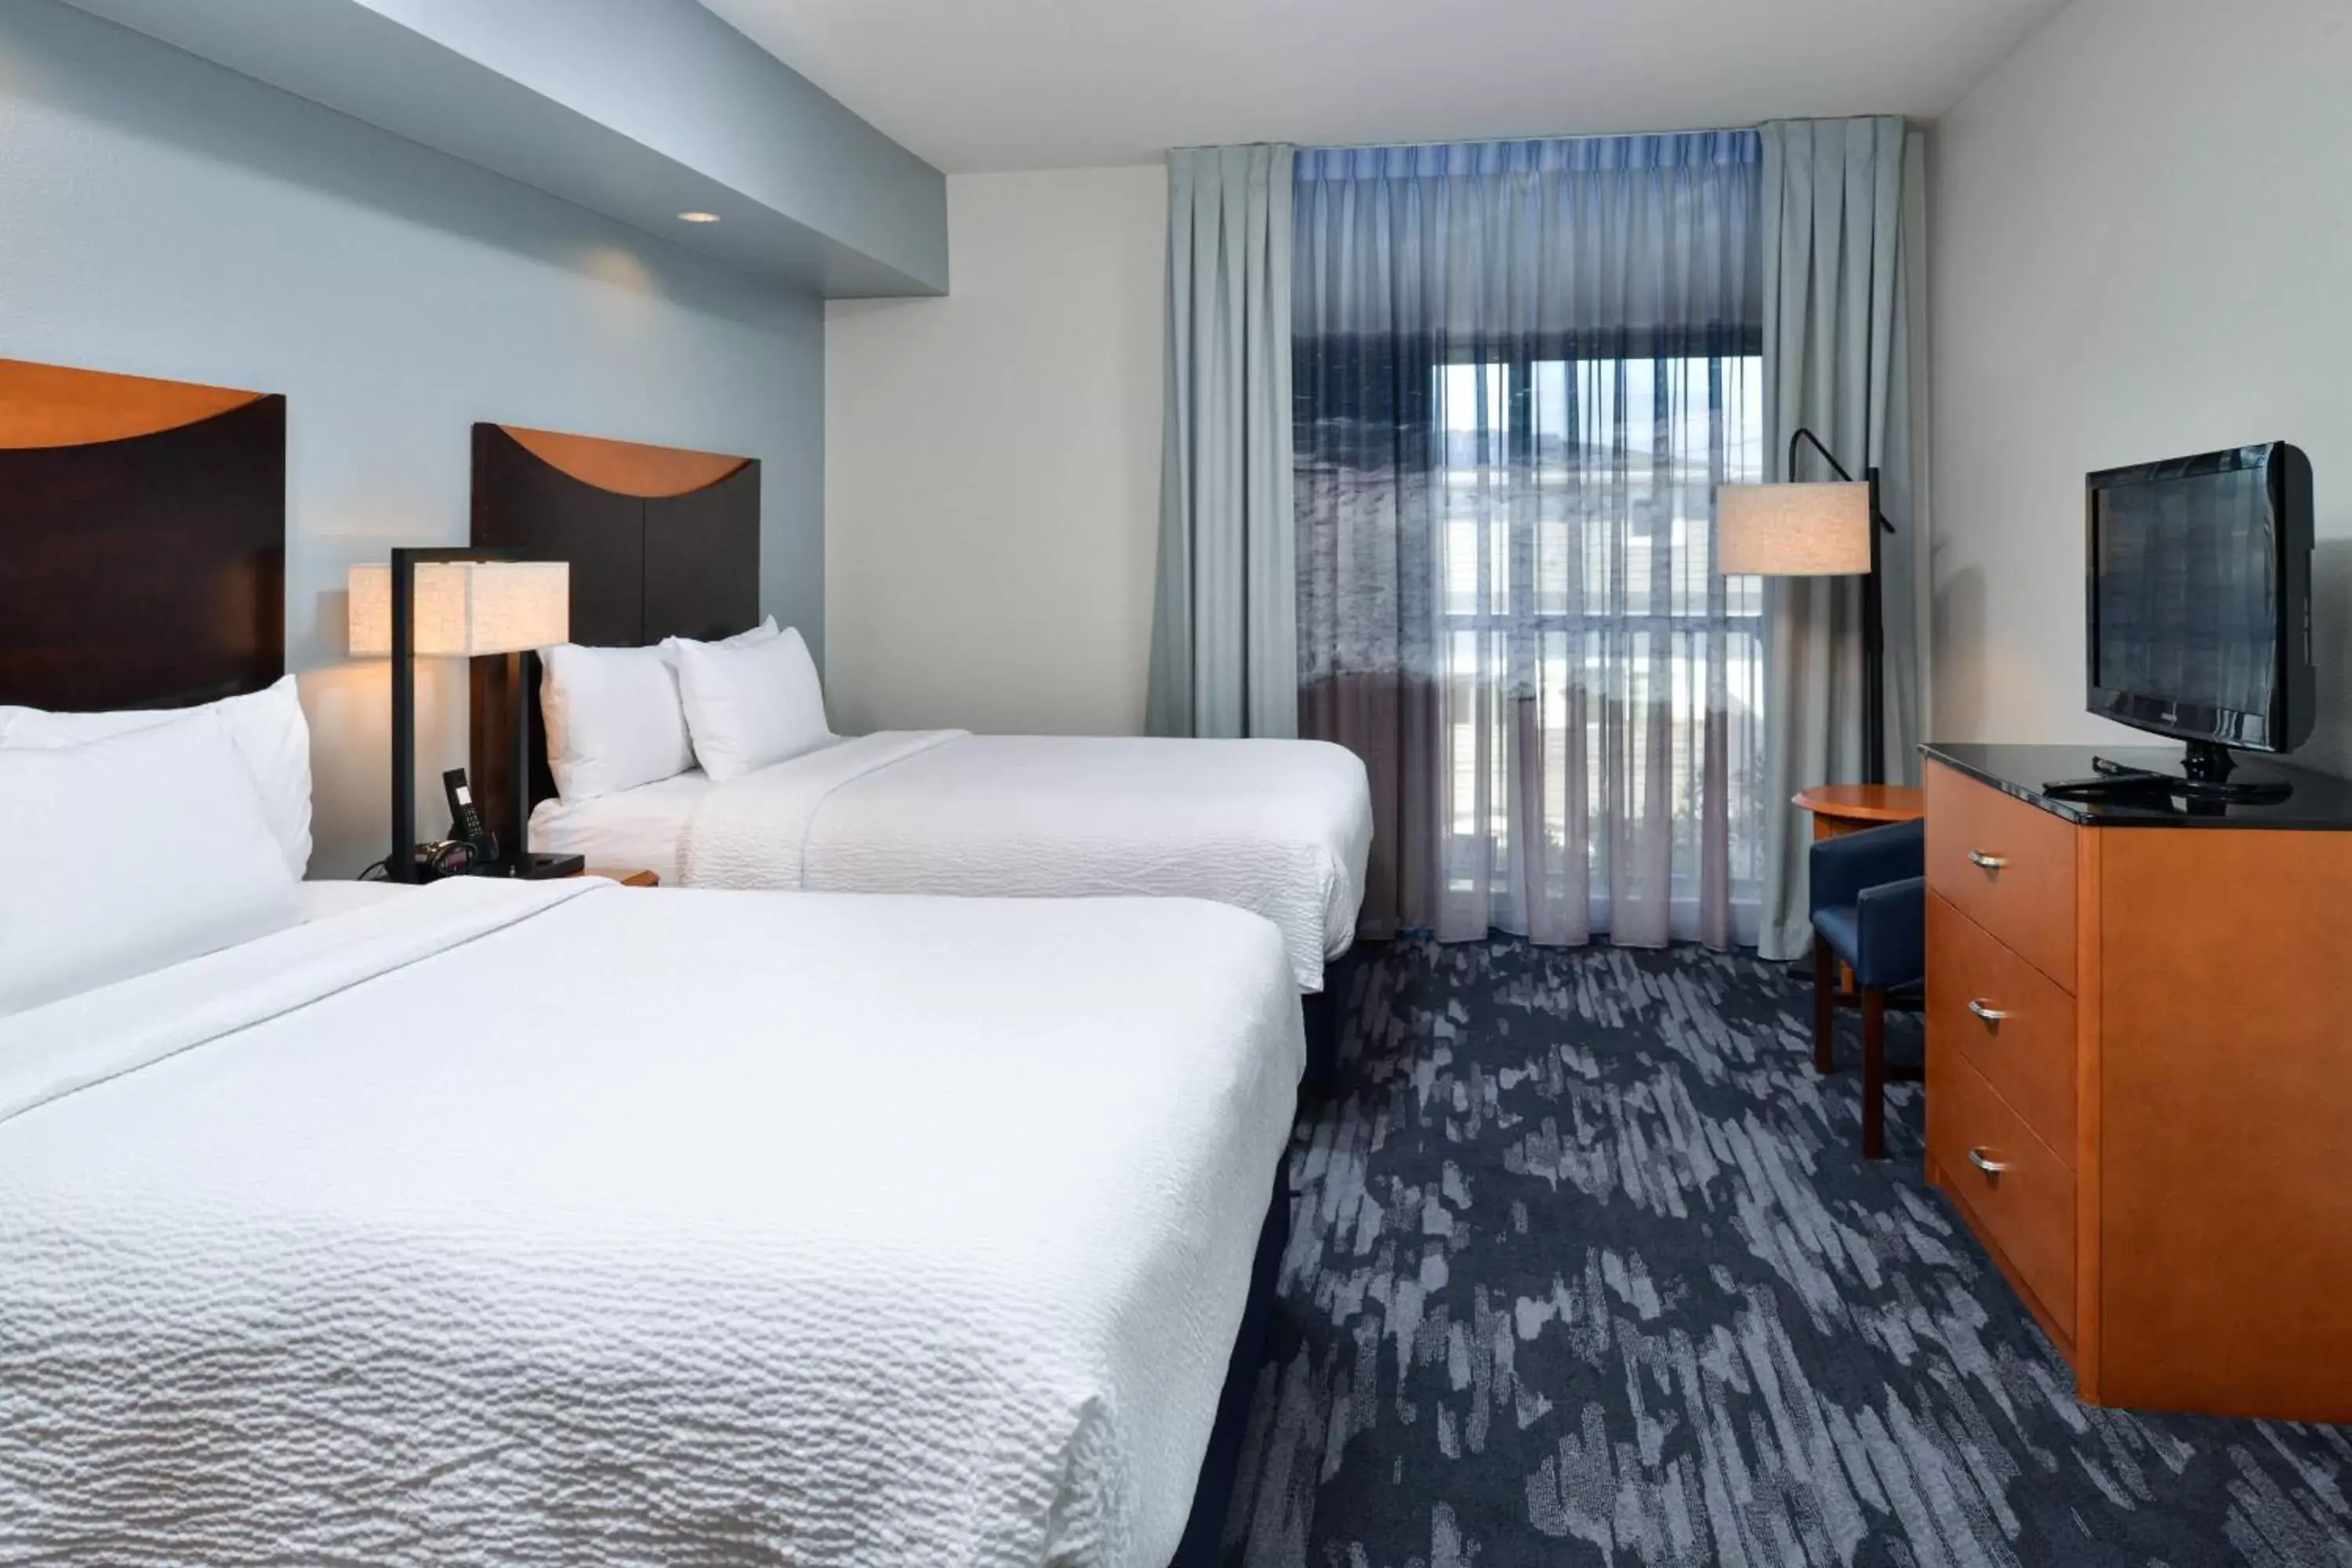 Bedroom, Bed in Fairfield Inn & Suites Santa Cruz - Capitola